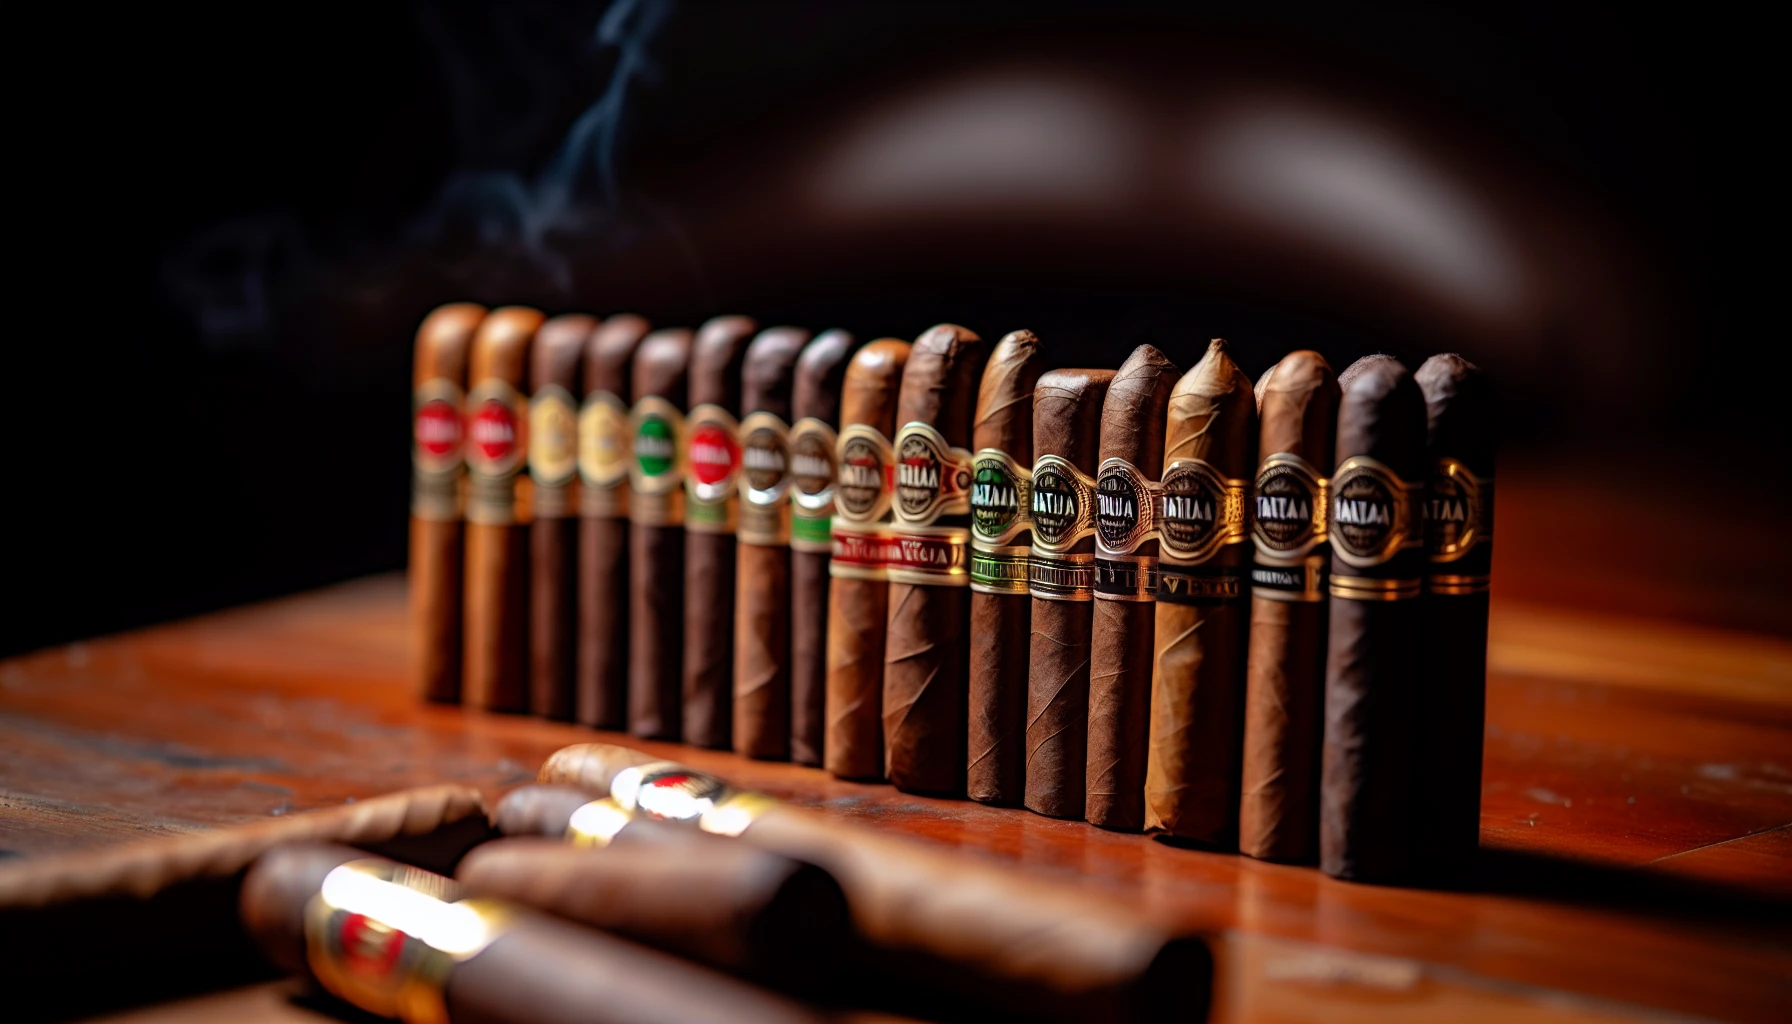 Various Tatuaje Verocu cigars lined up in a row